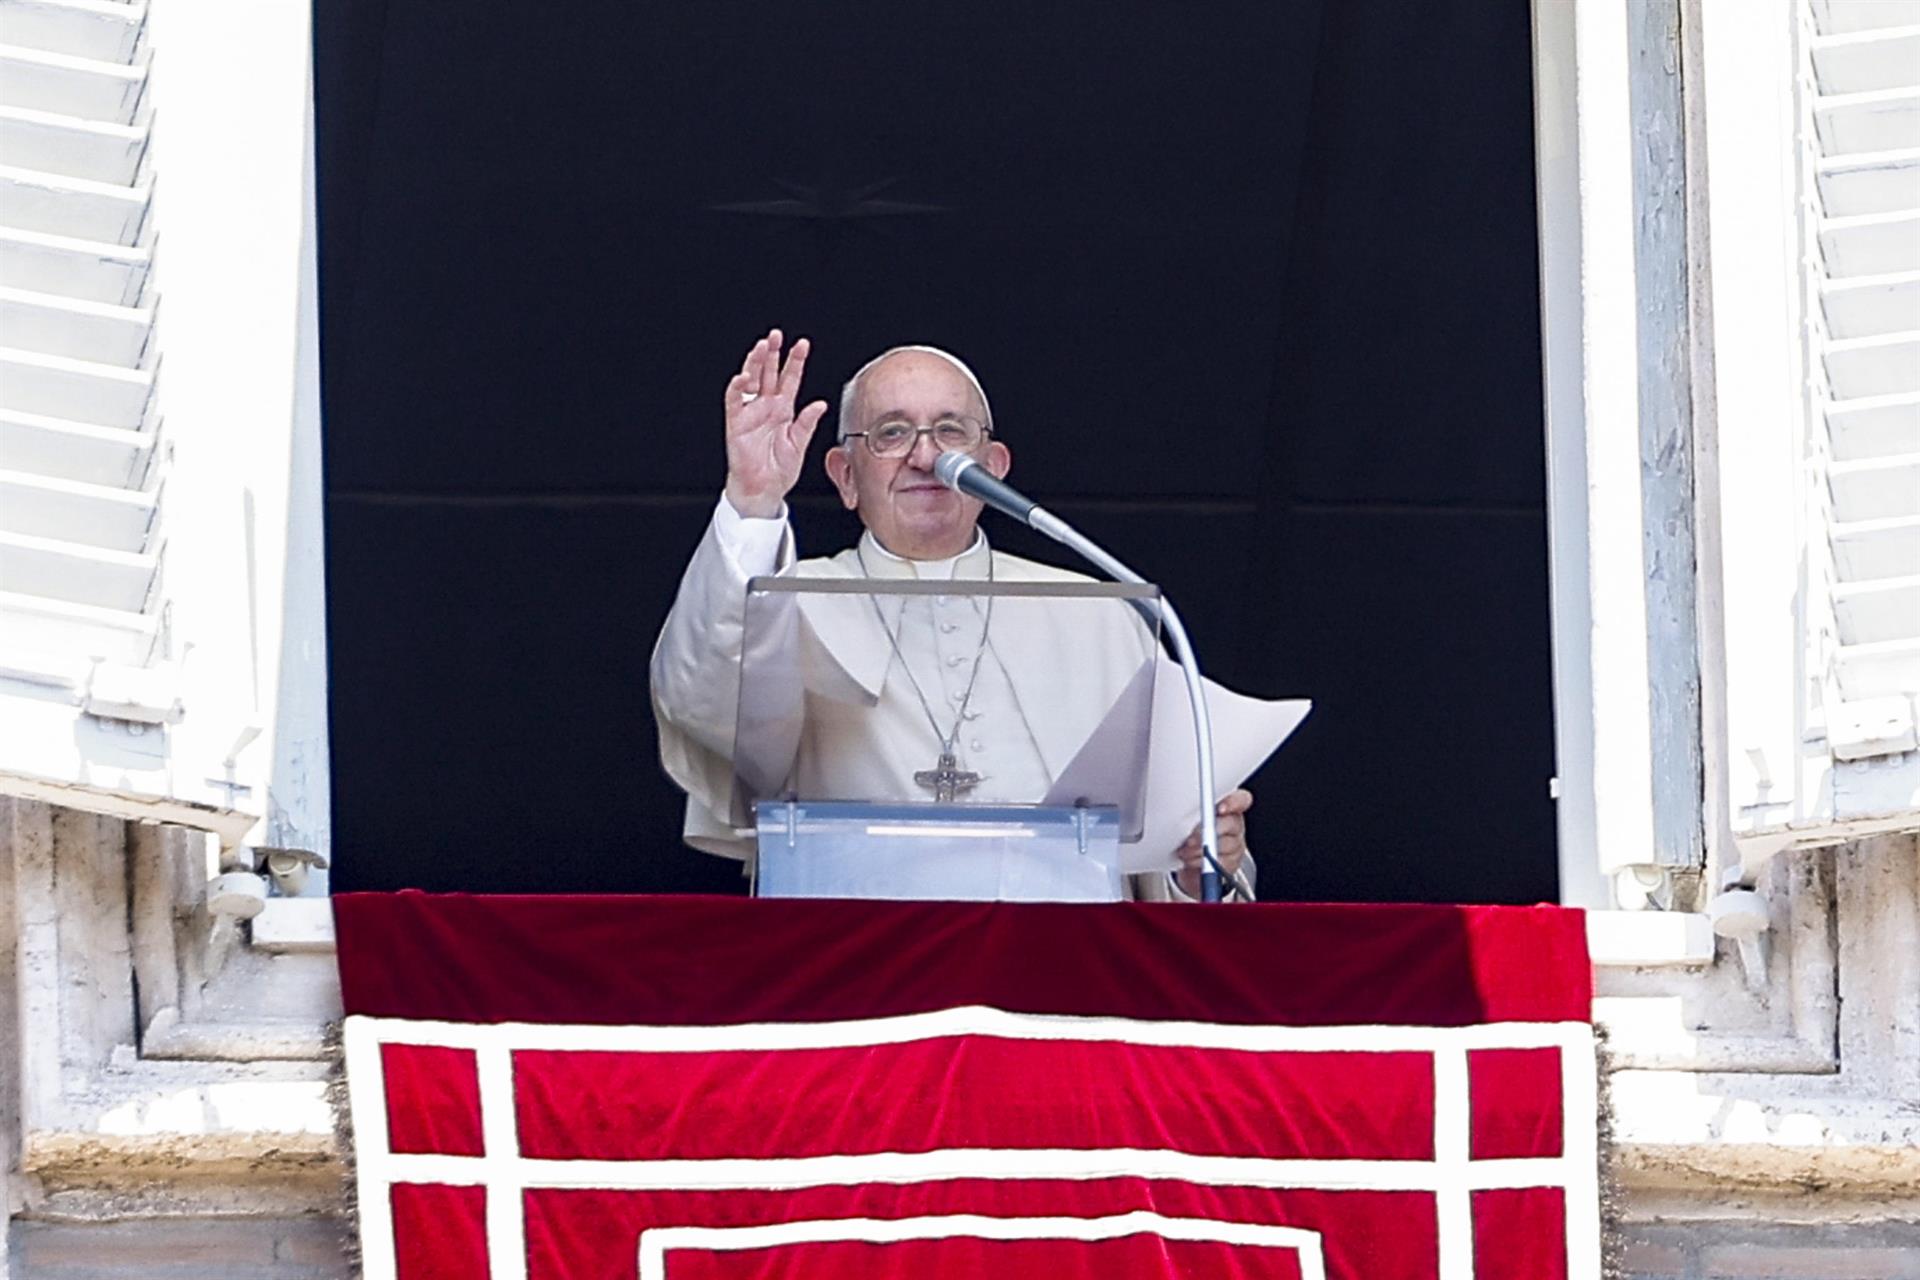 El papa Francisco pide la paz en el mundo y reza por Ucrania